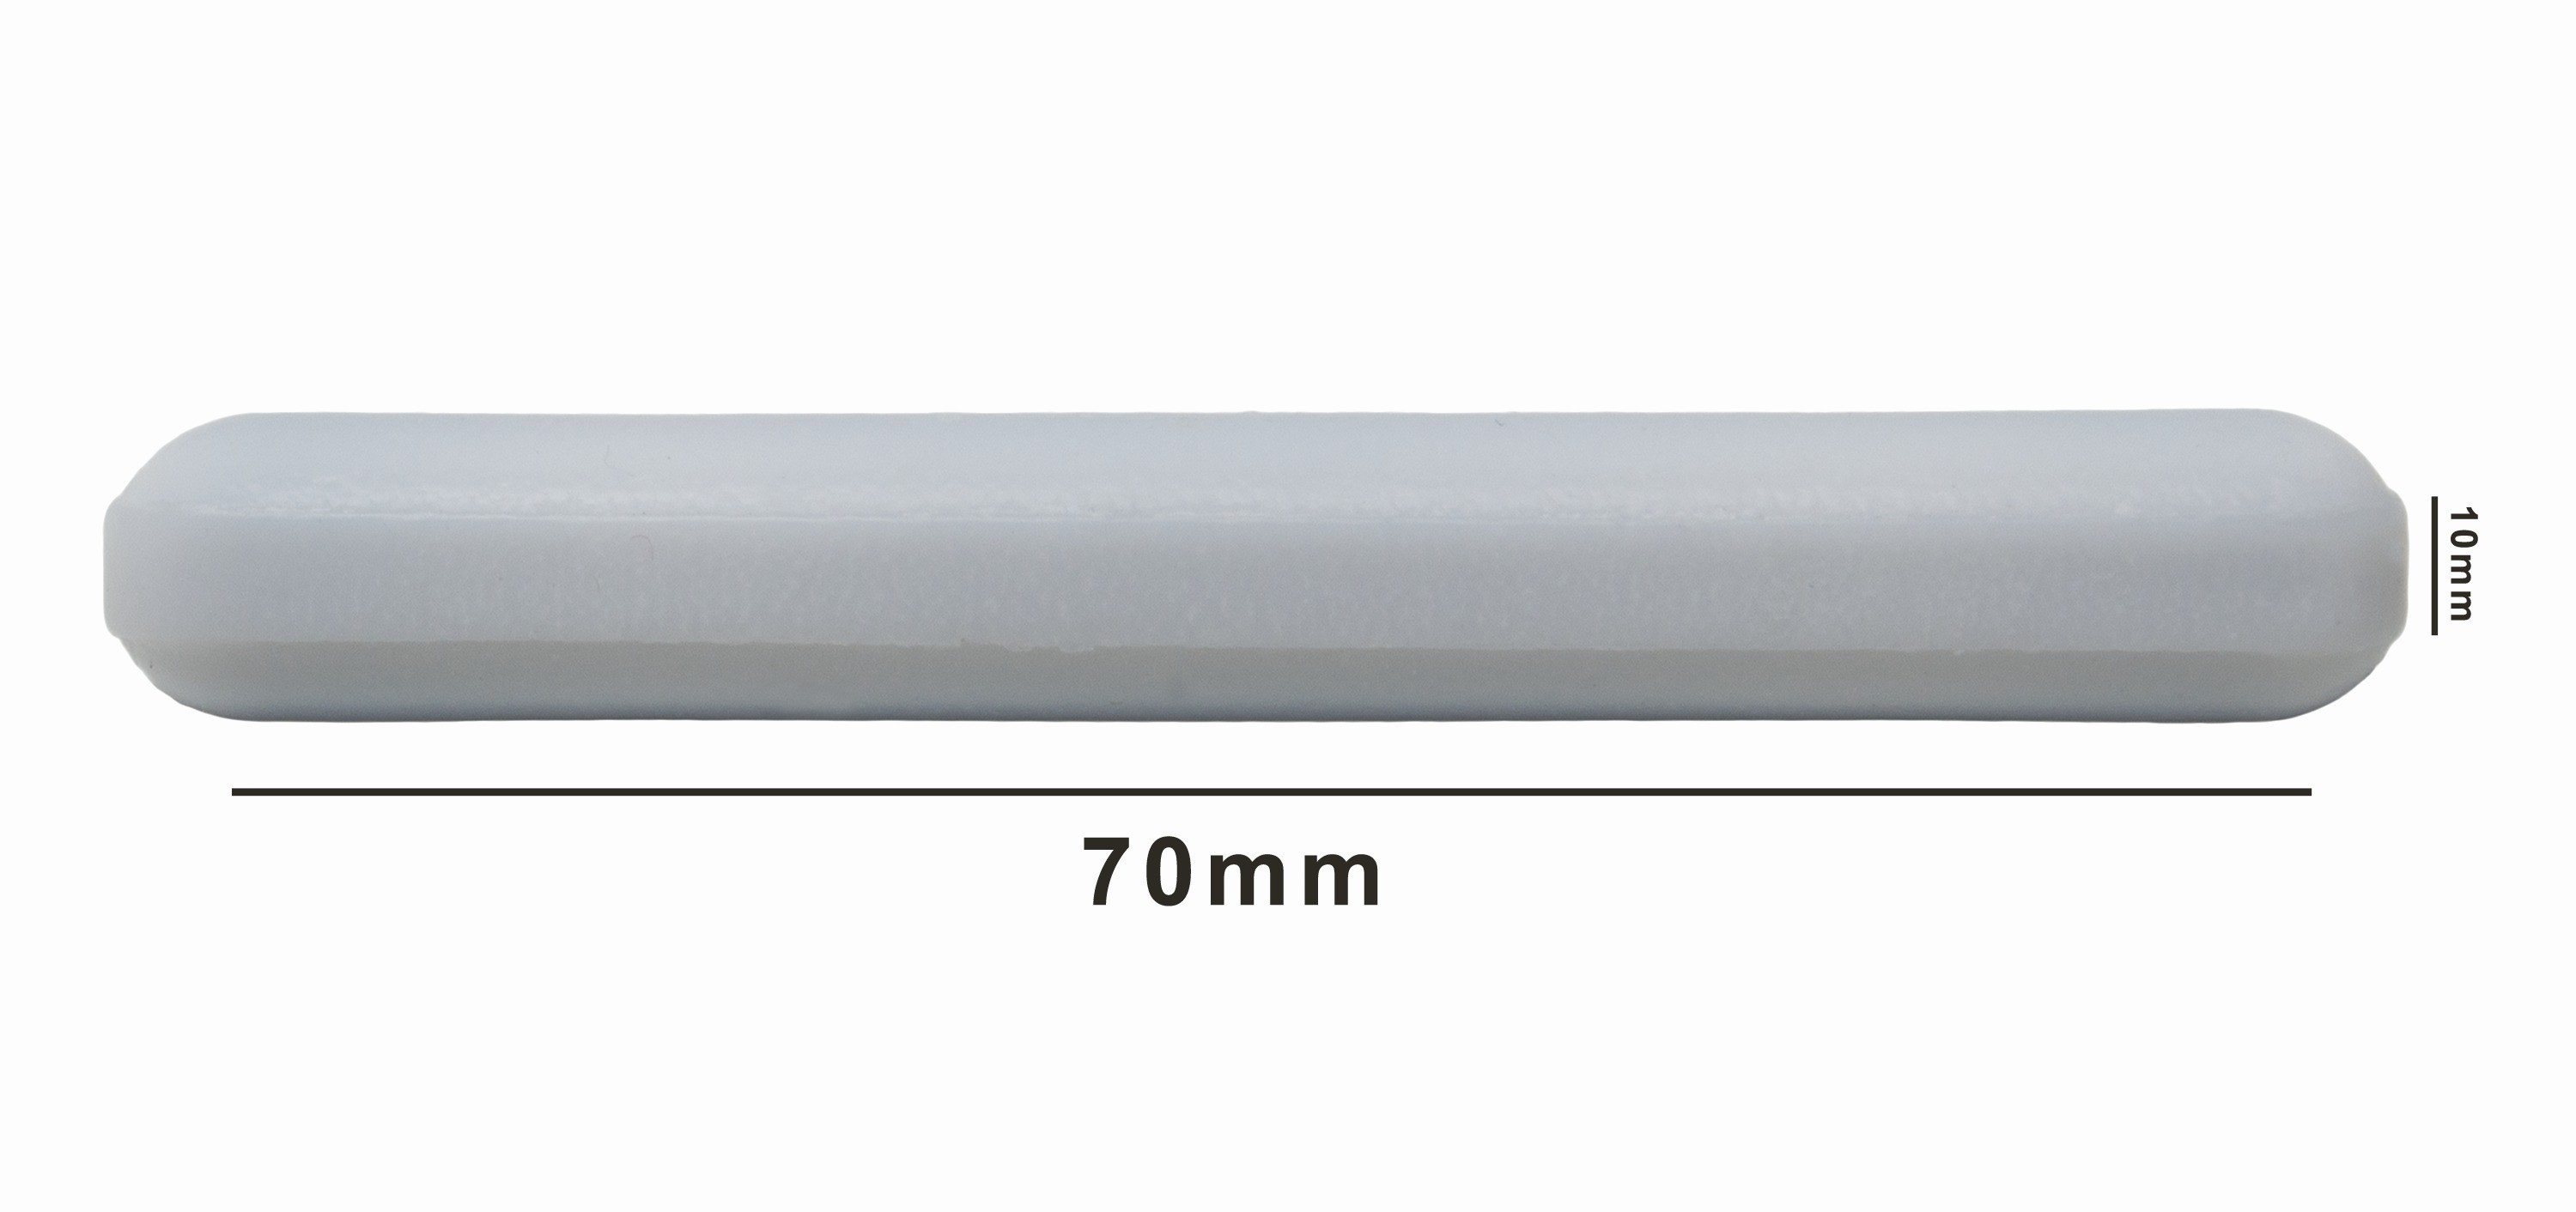 SP Bel-Art Spinbar Teflon Polygon Magnetic Stirring Bar; 70 x 10mm, White, without Pivot Ring